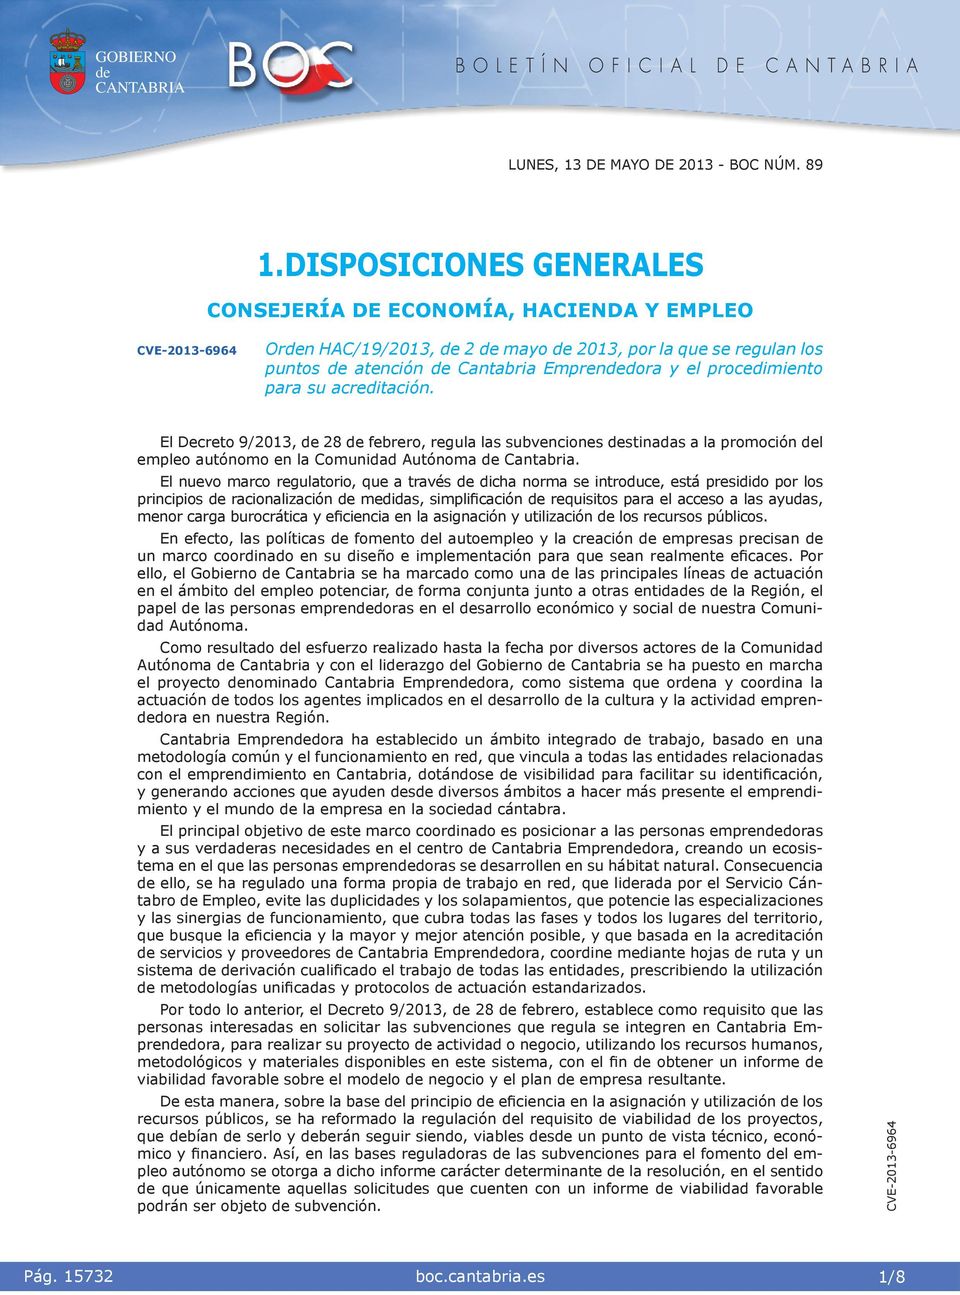 El Decreto 9/2013, 28 febrero, regula las subvencones stnadas a la promocón l empleo autónomo en la Comundad Autónoma Cantabra.